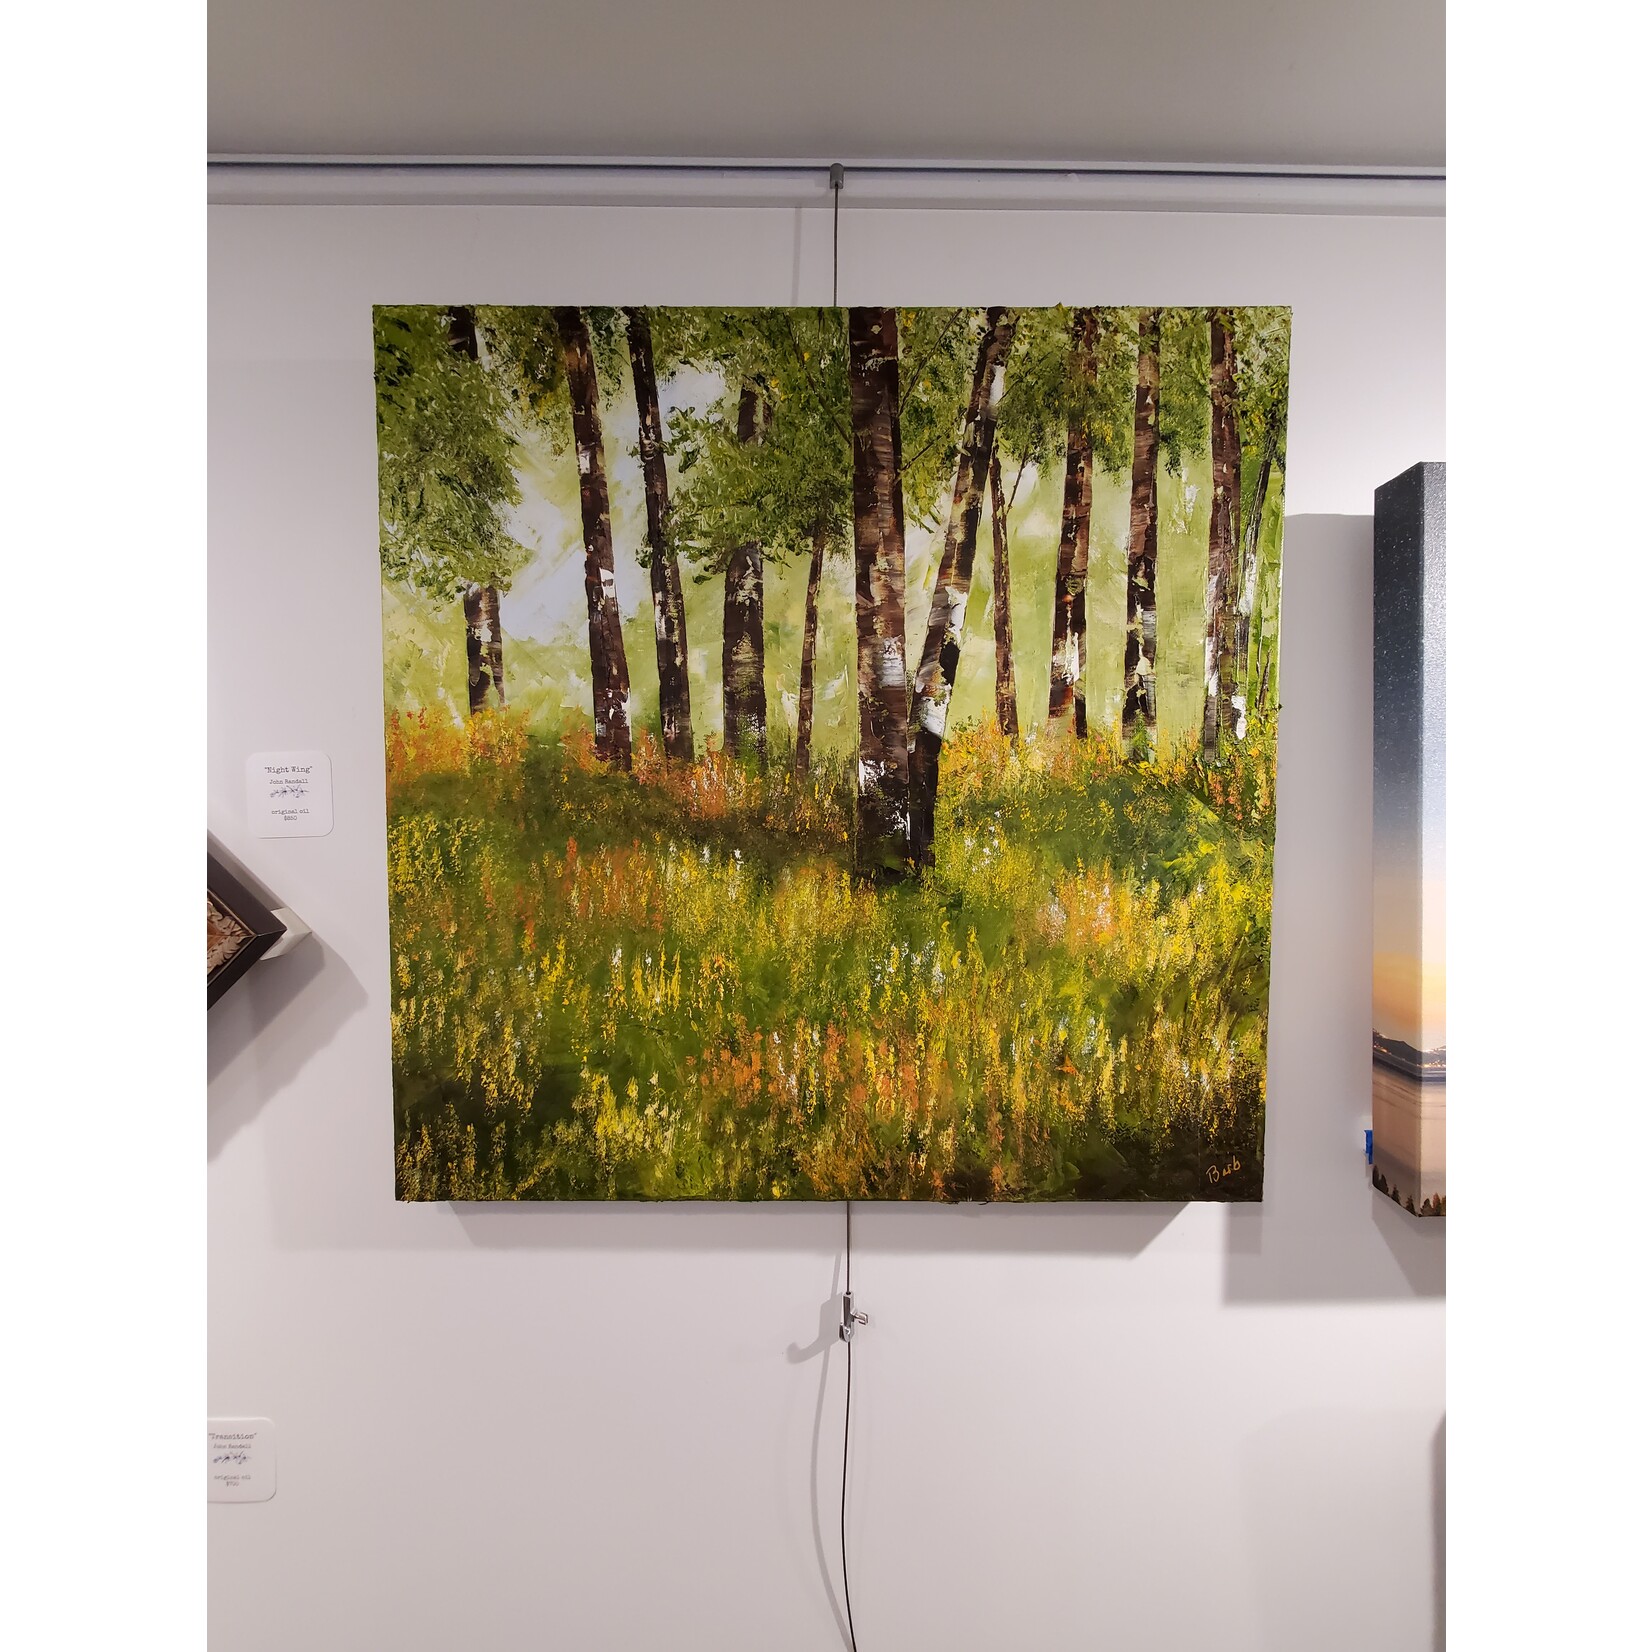 Barb Moniot "Sierra Meadows" - original oil on canvas - 24x24"